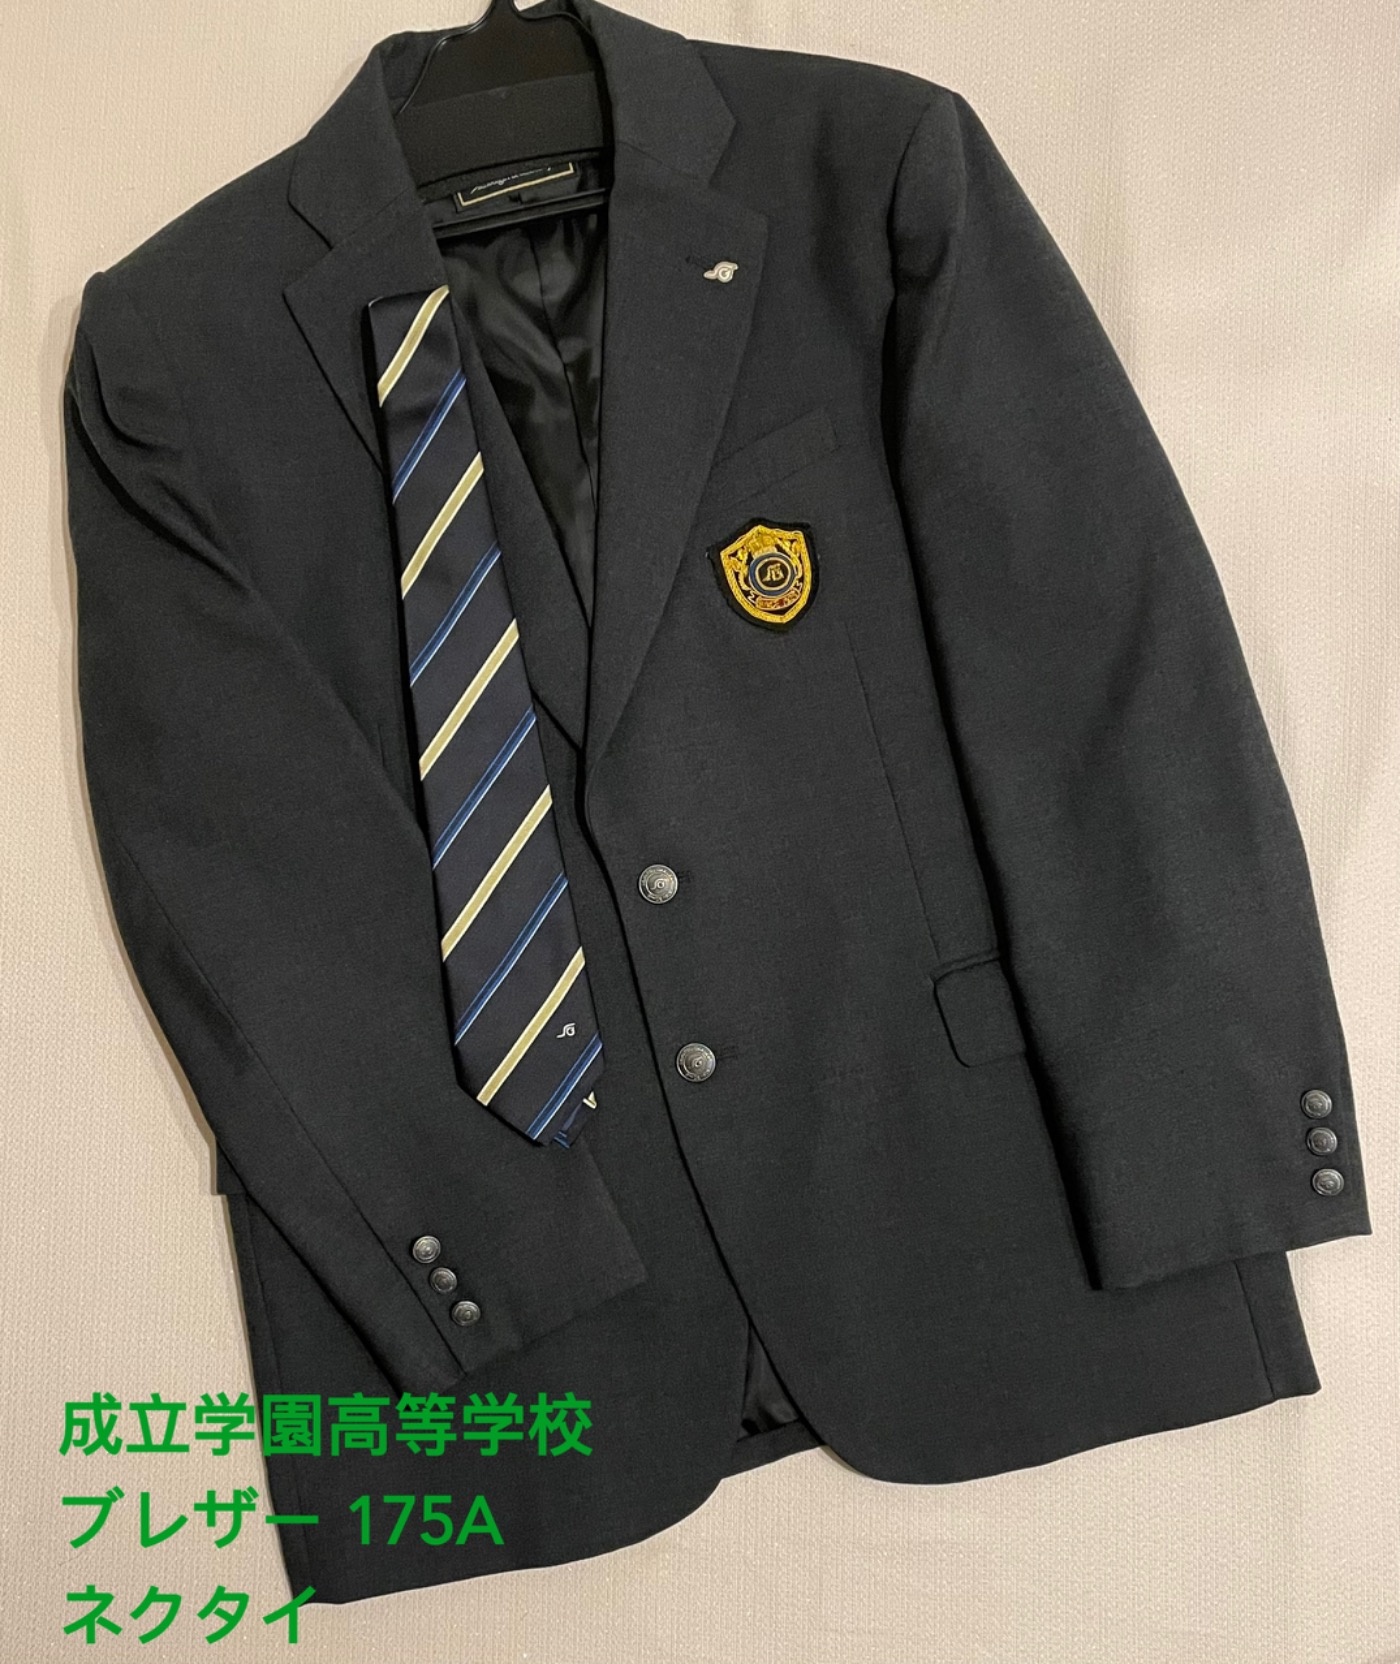 倉敷高校男子制服一式 - スーツ